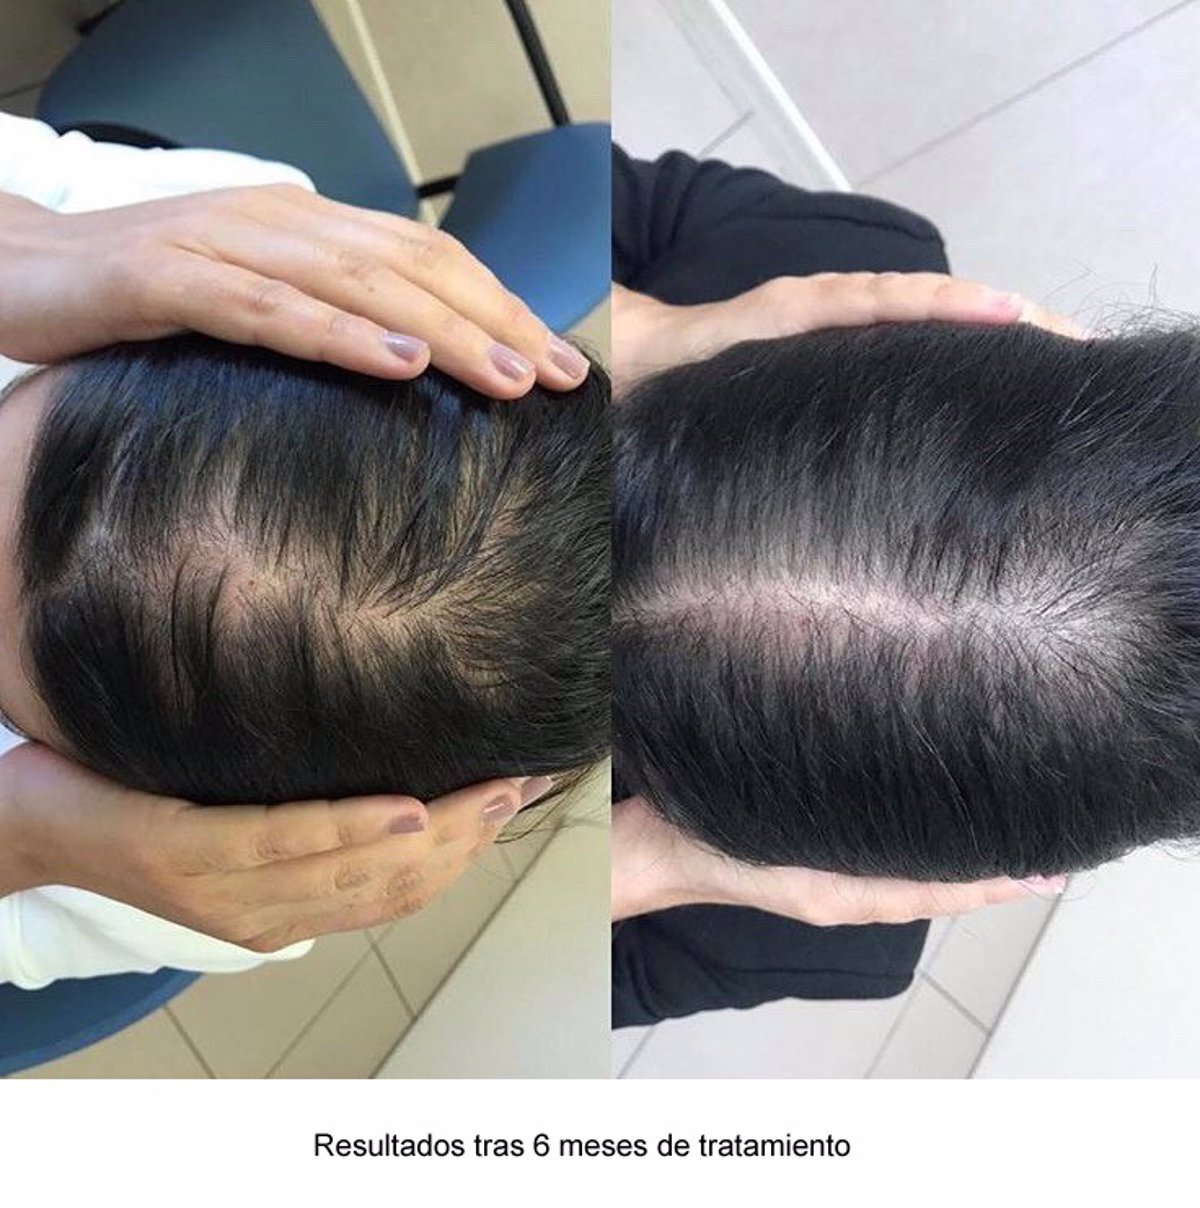 La consulta de tricología H. Quirónsalud San José una nueva para la alopecia androgenética